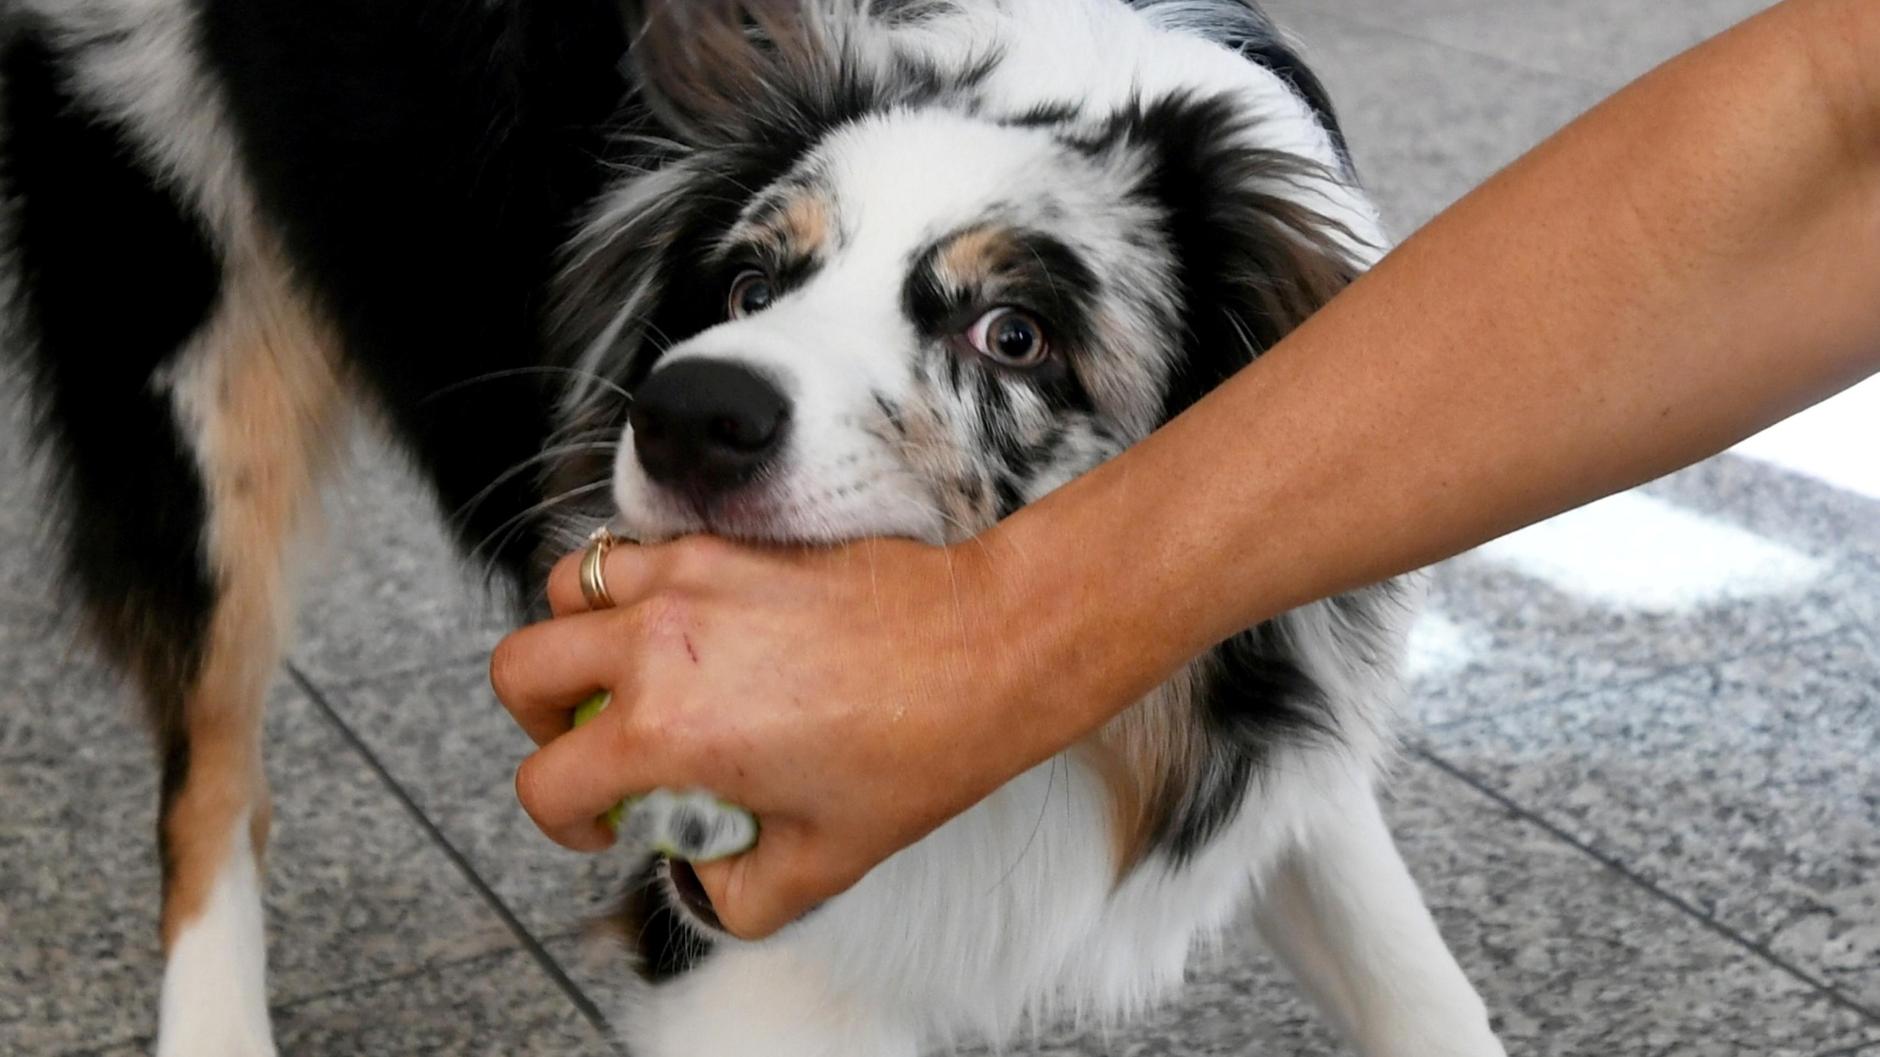 Tiere Zahl der HundeAttacken in Bayern steigt deutlich Augsburger